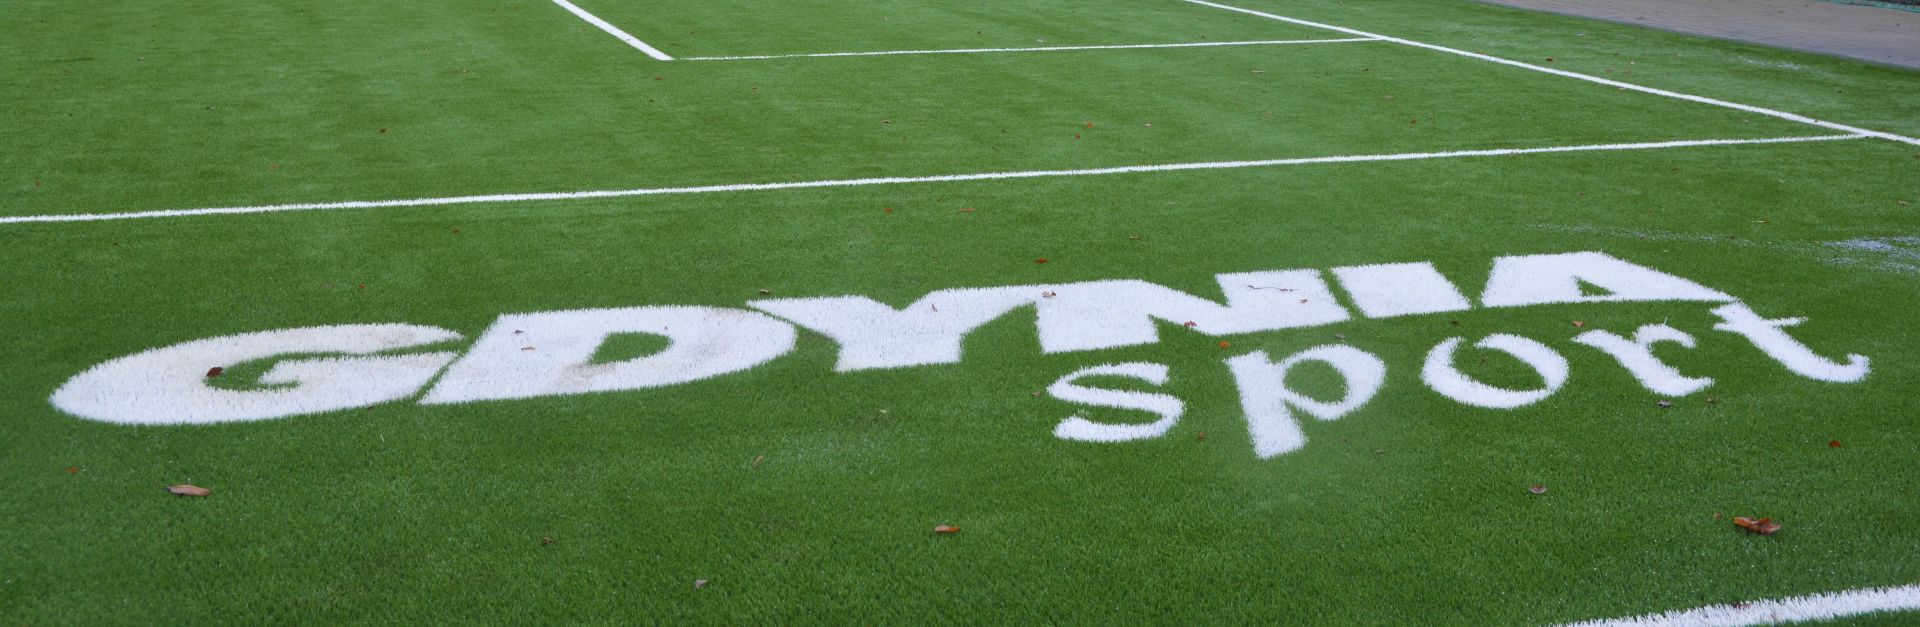 napis "Gdynia Sport" na trawie 